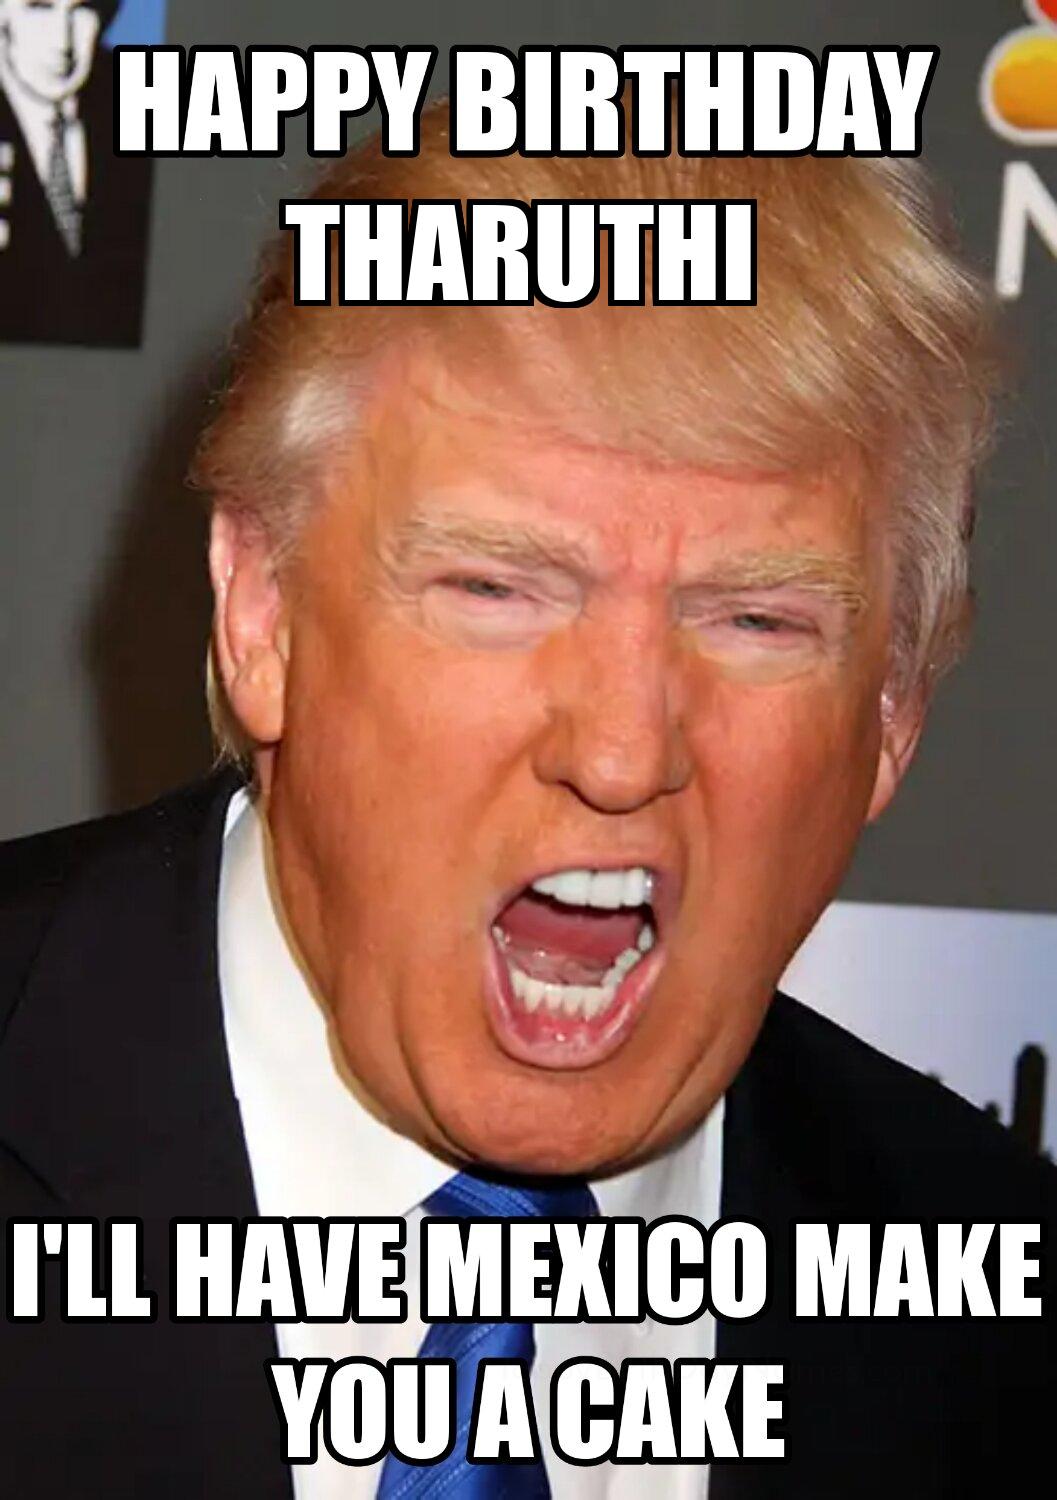 Happy Birthday Tharuthi Mexico Make You A Cake Meme